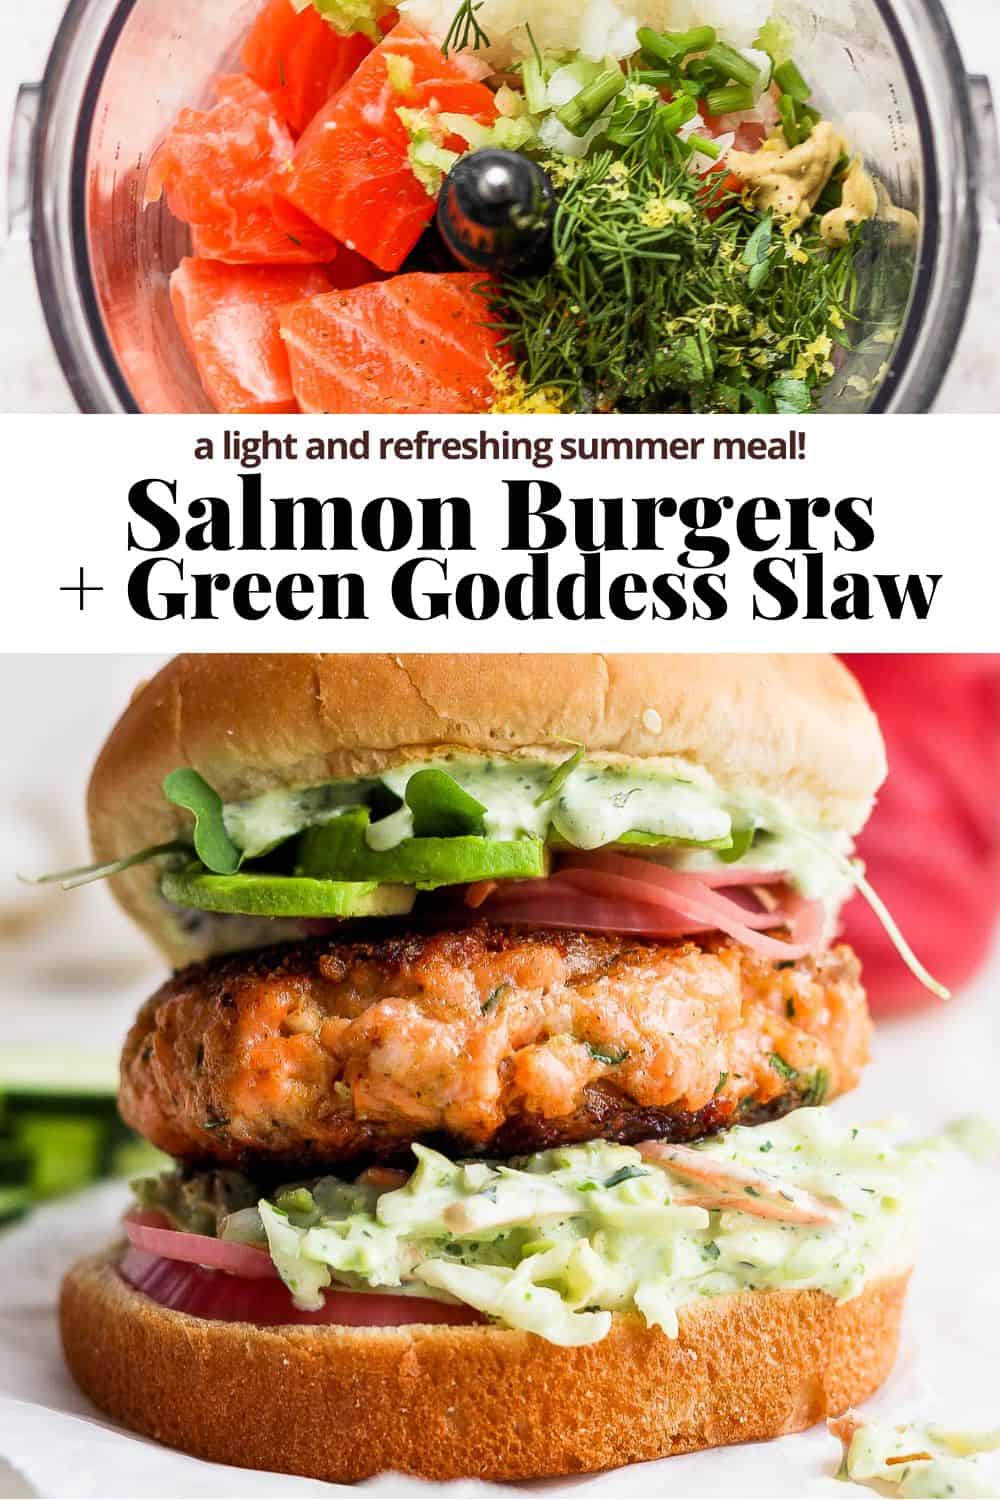 Salmon Burger + Green Goddess Slaw - The Wooden Skillet